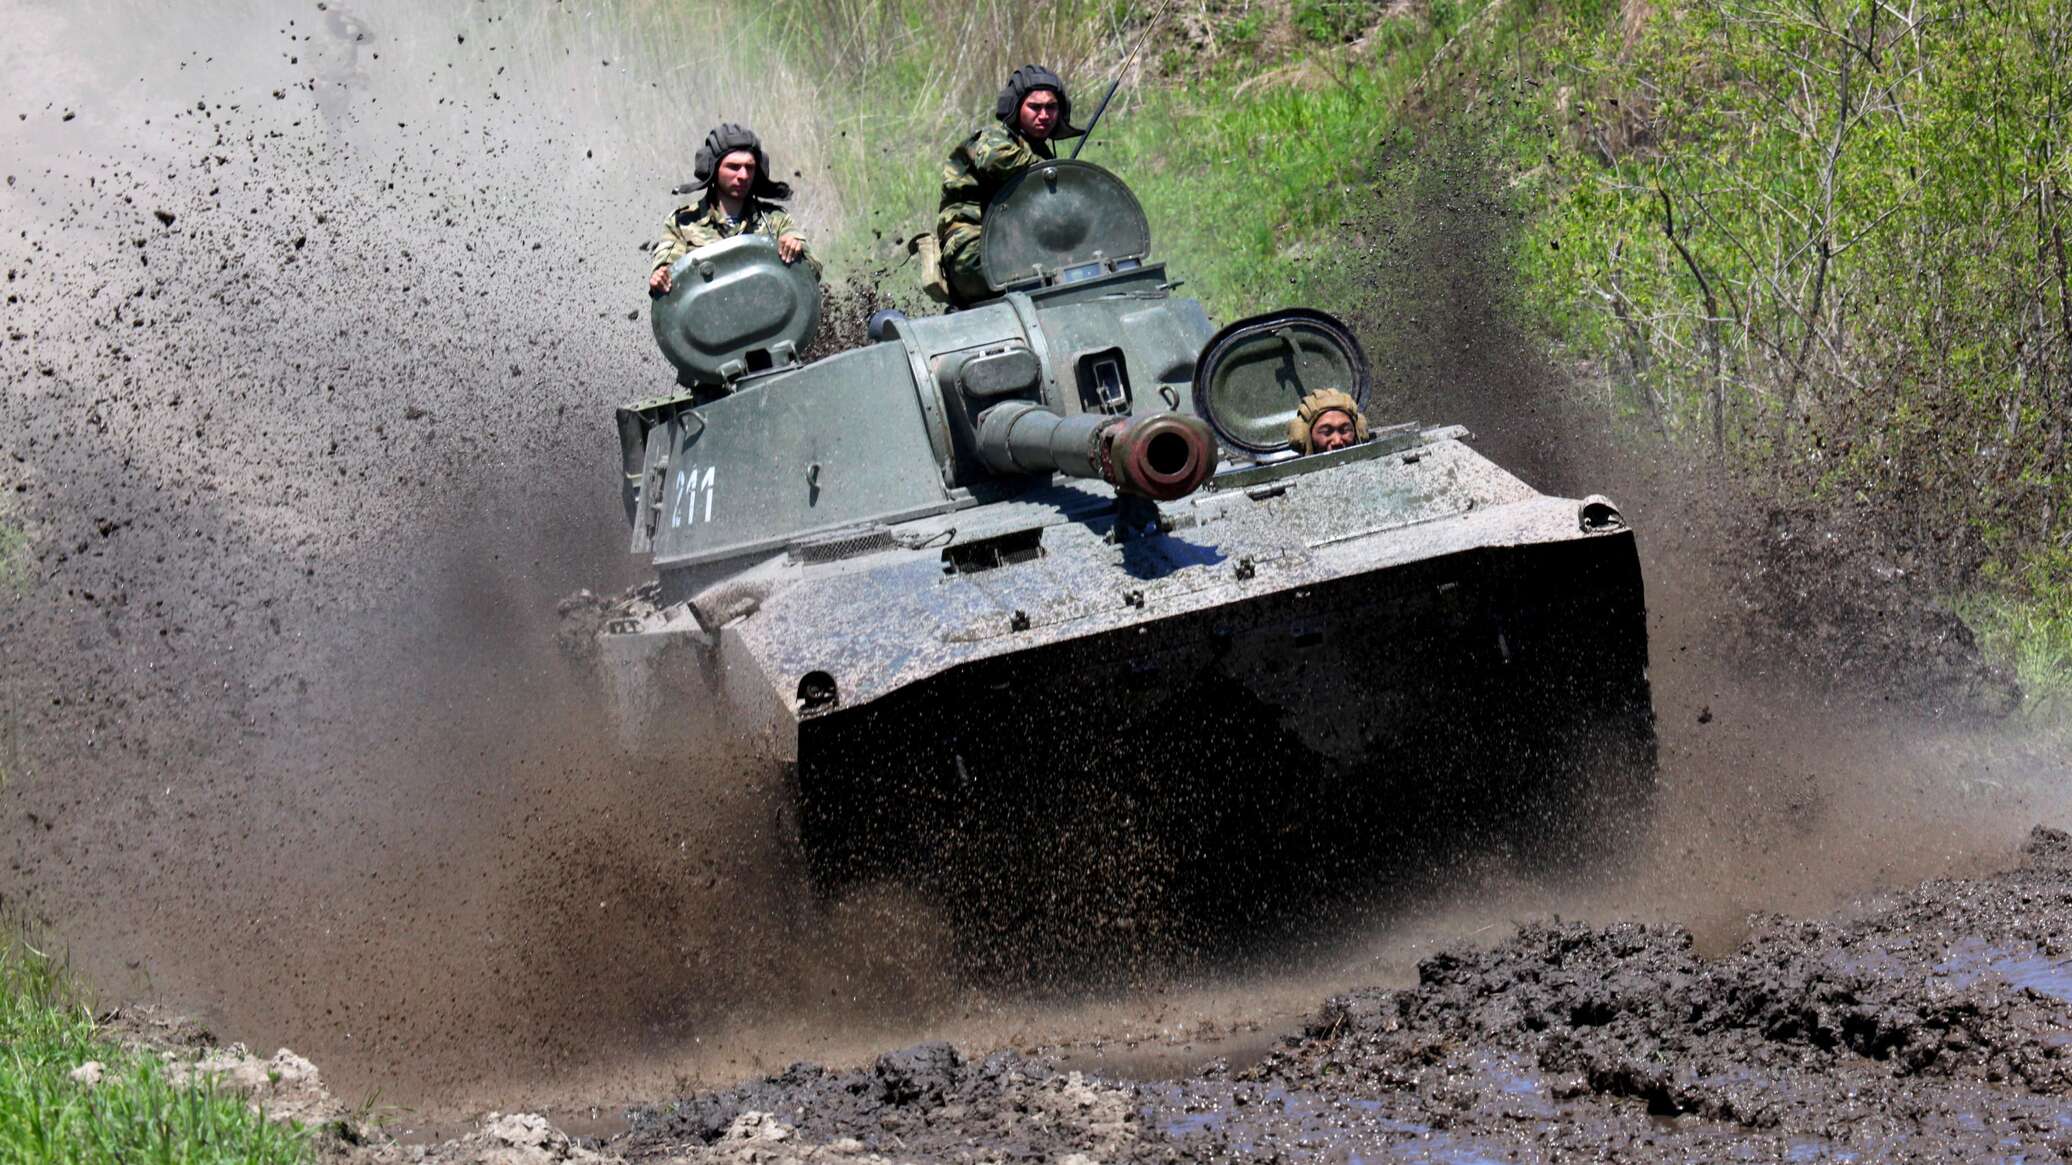 المدفعية الروسية تدمر معاقل للجيش الأوكراني وتحيد مجموعات عسكرية أوكرانية... فيديو